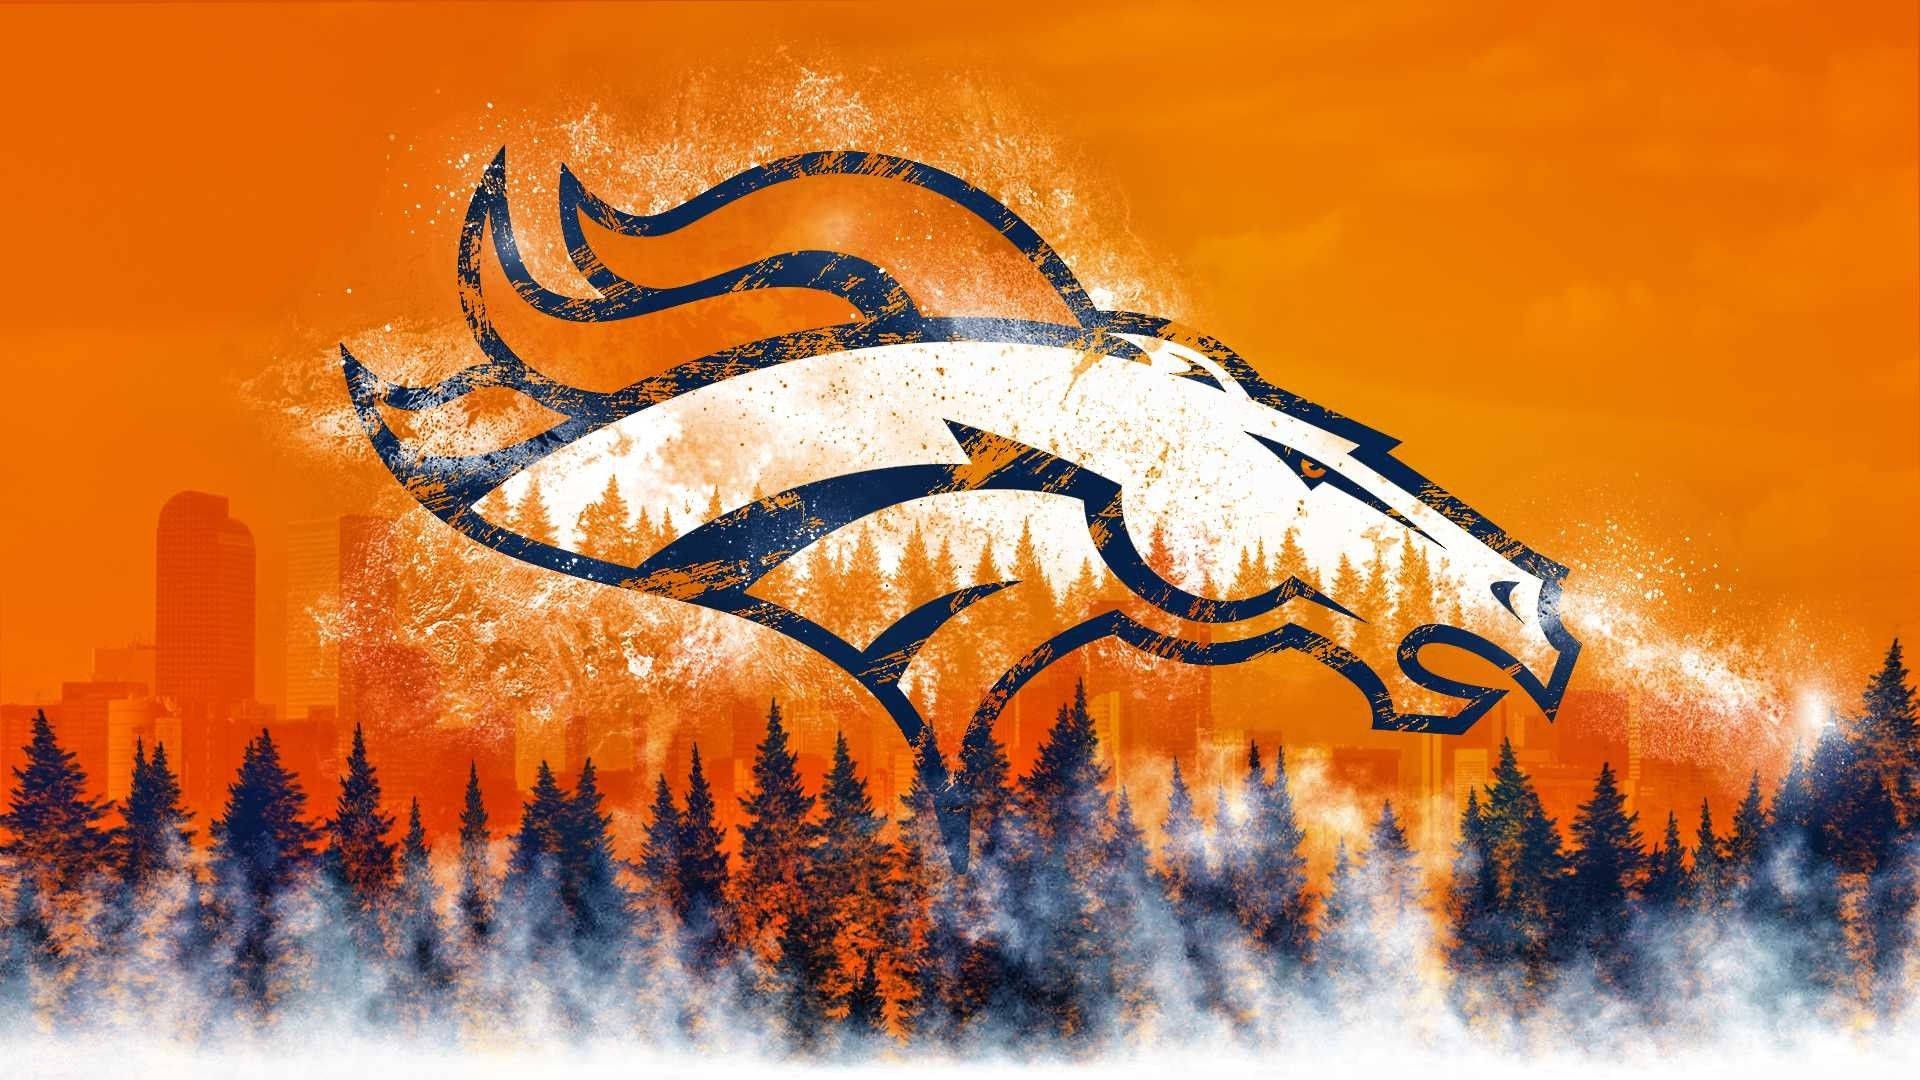 Denver Broncos Wallpaper Background